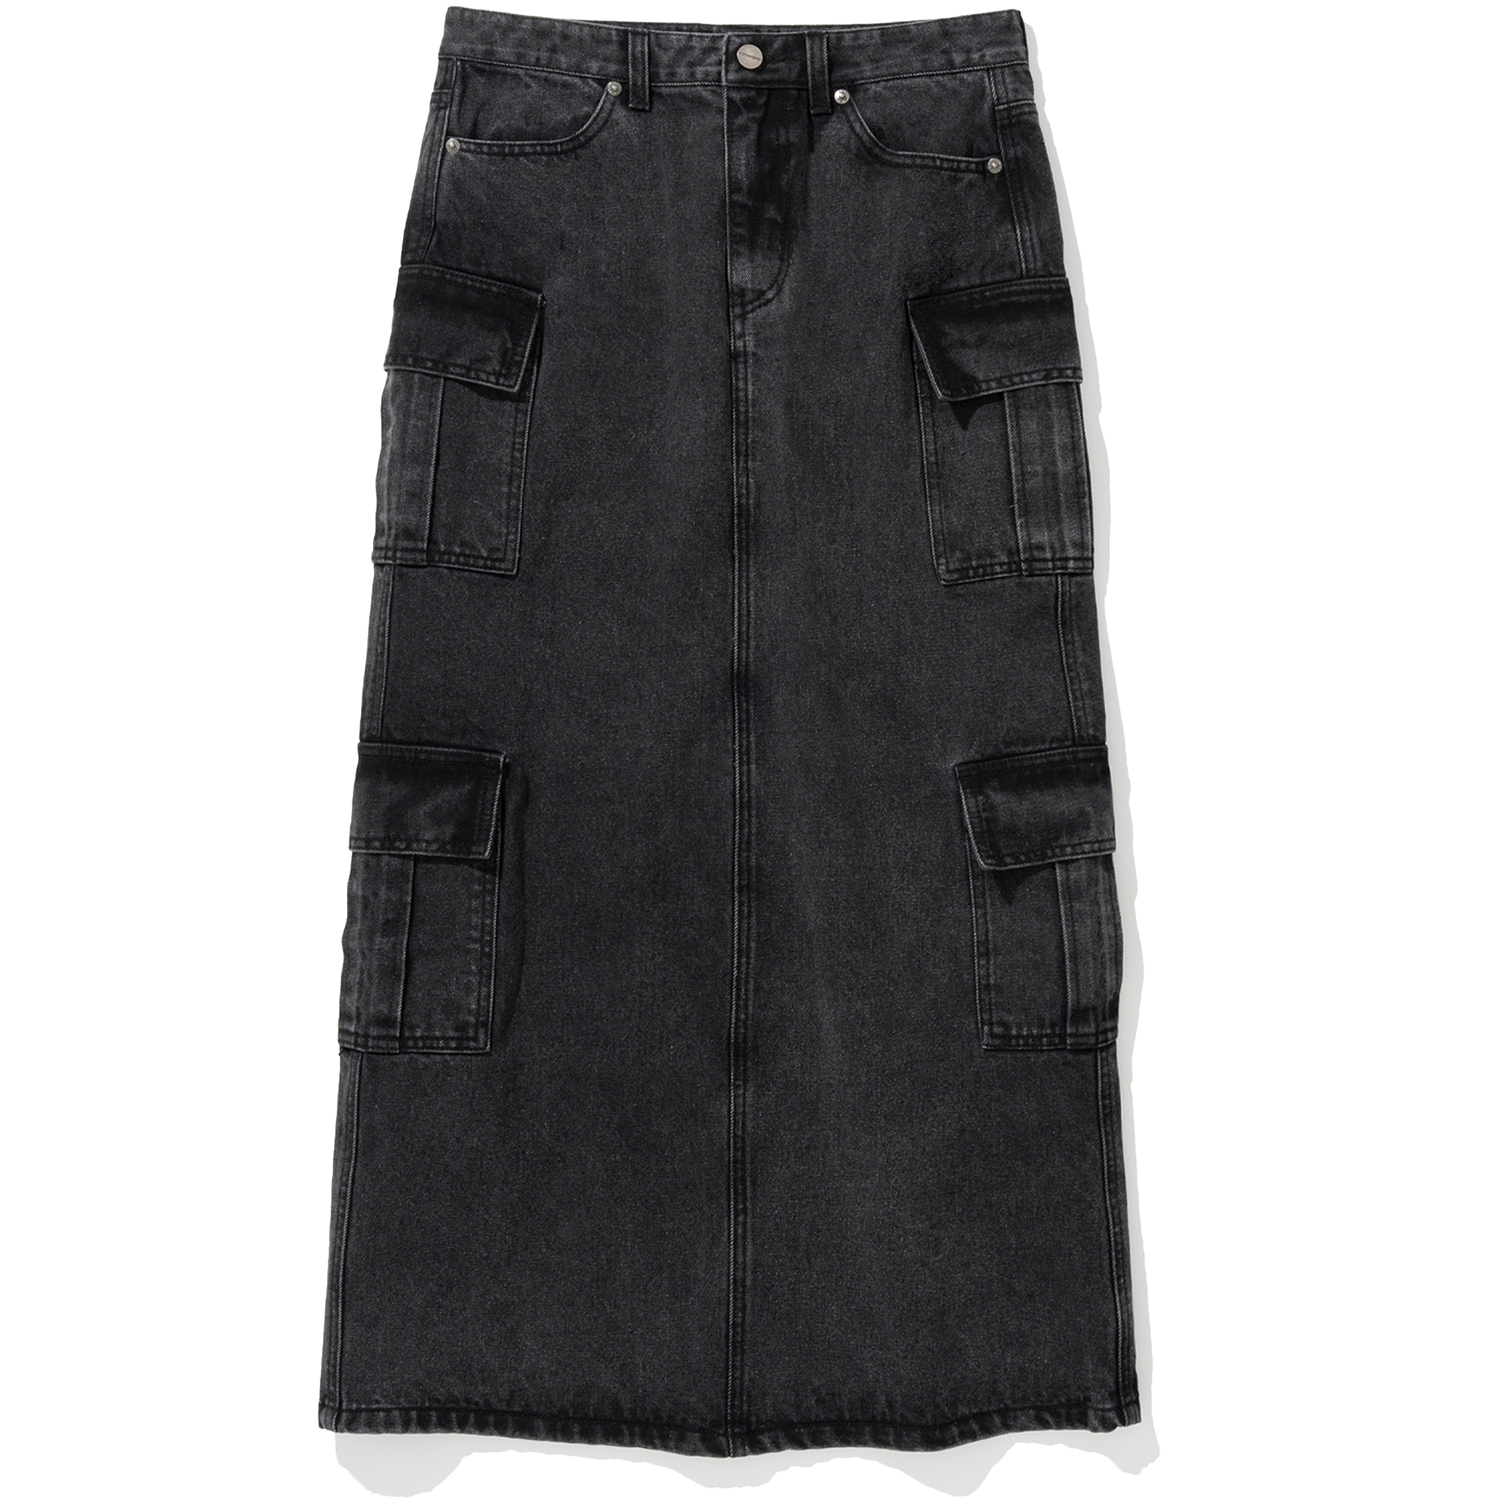 W Denim Cargo Long Skirt - Black,NOT4NERD